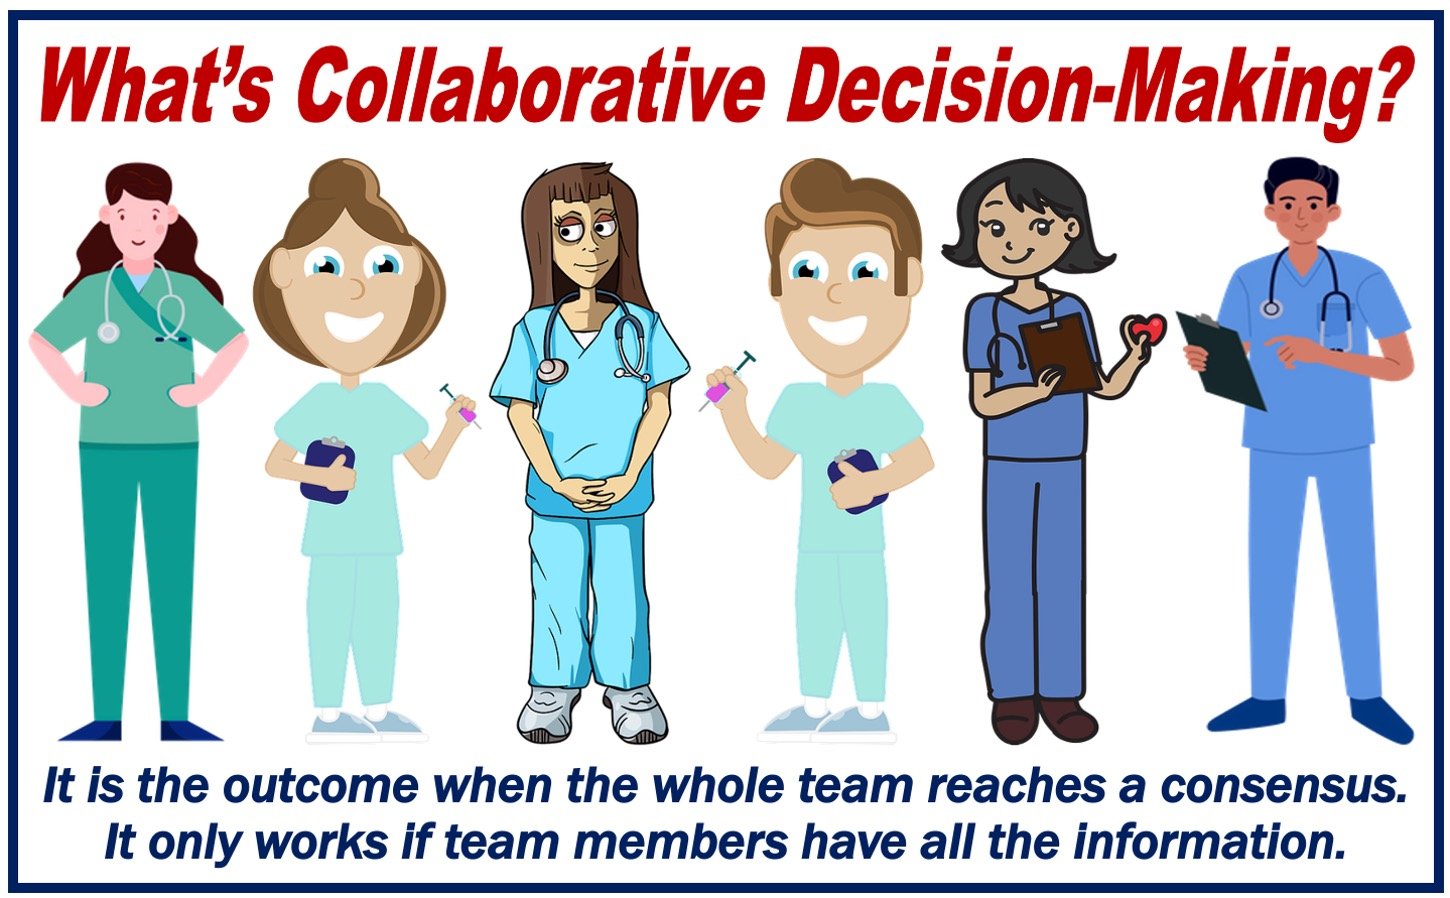 Collaborative decision-making